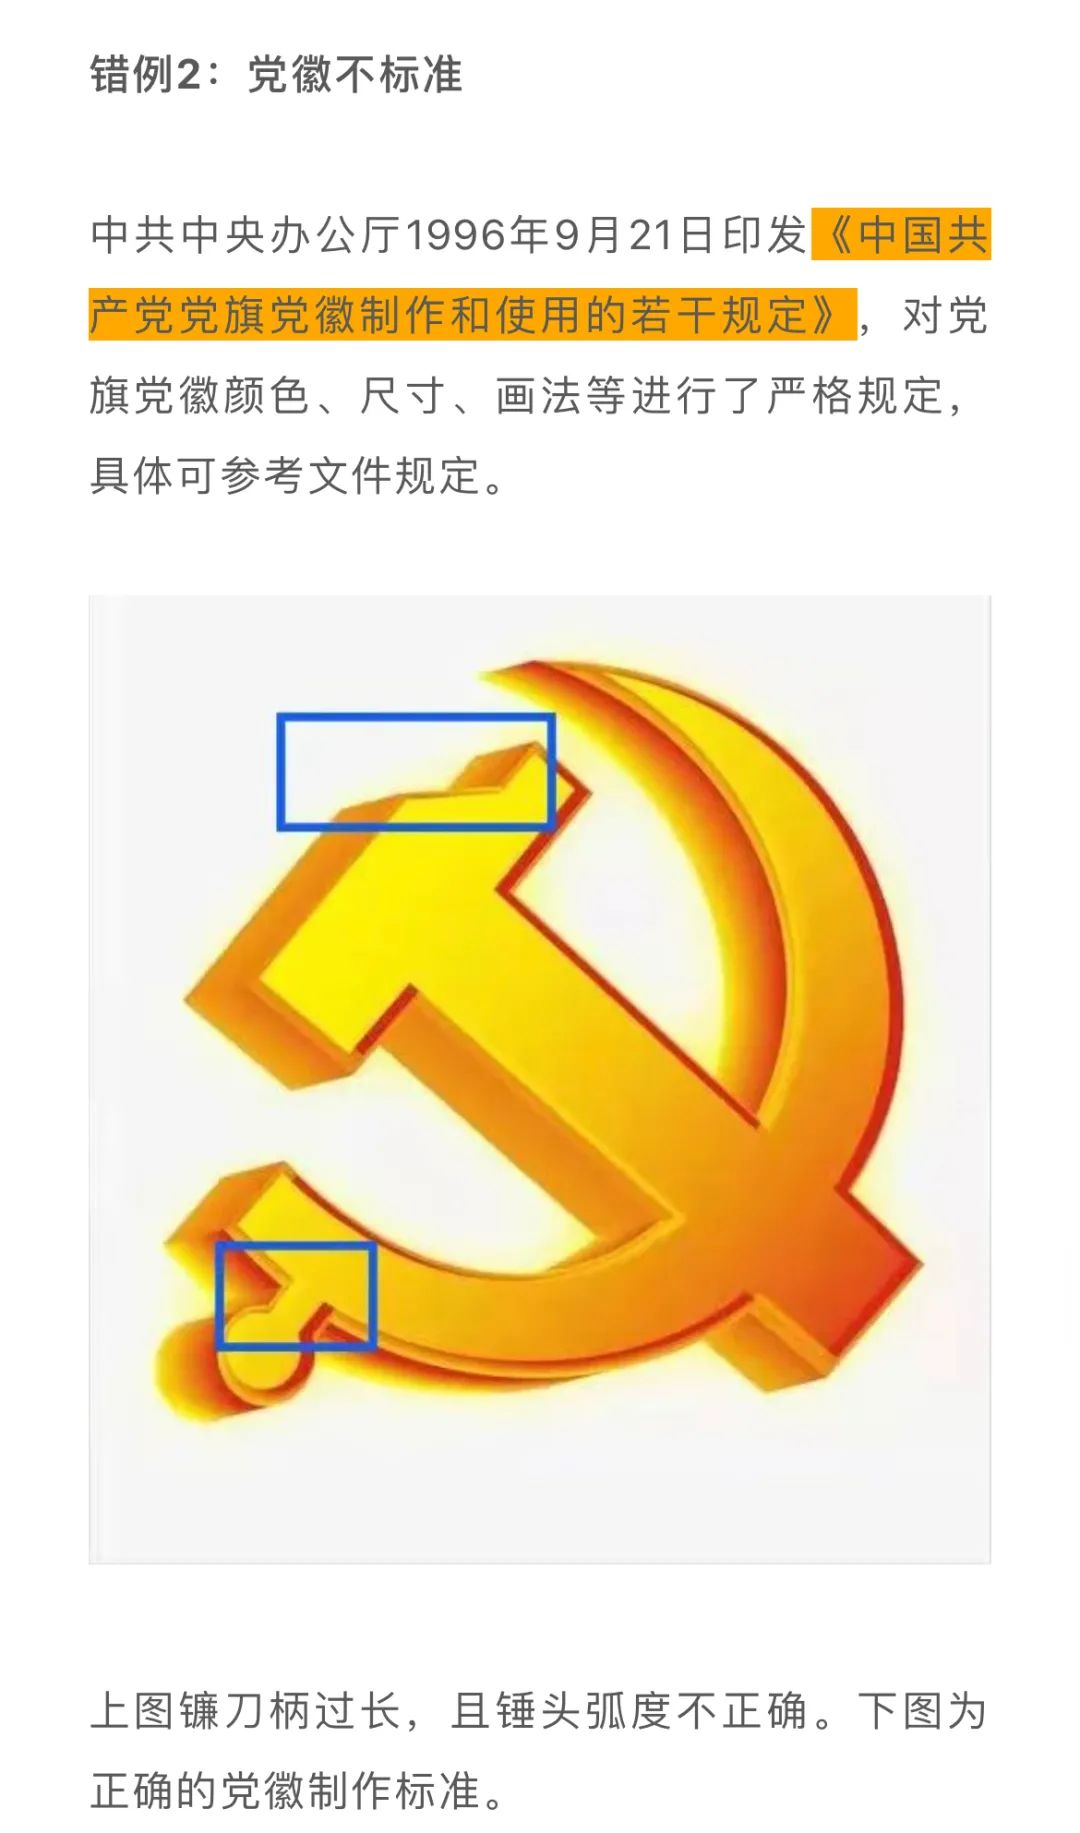 党旗党徽下载方式:长按复制下方链接,在浏览器中打开http://cpc